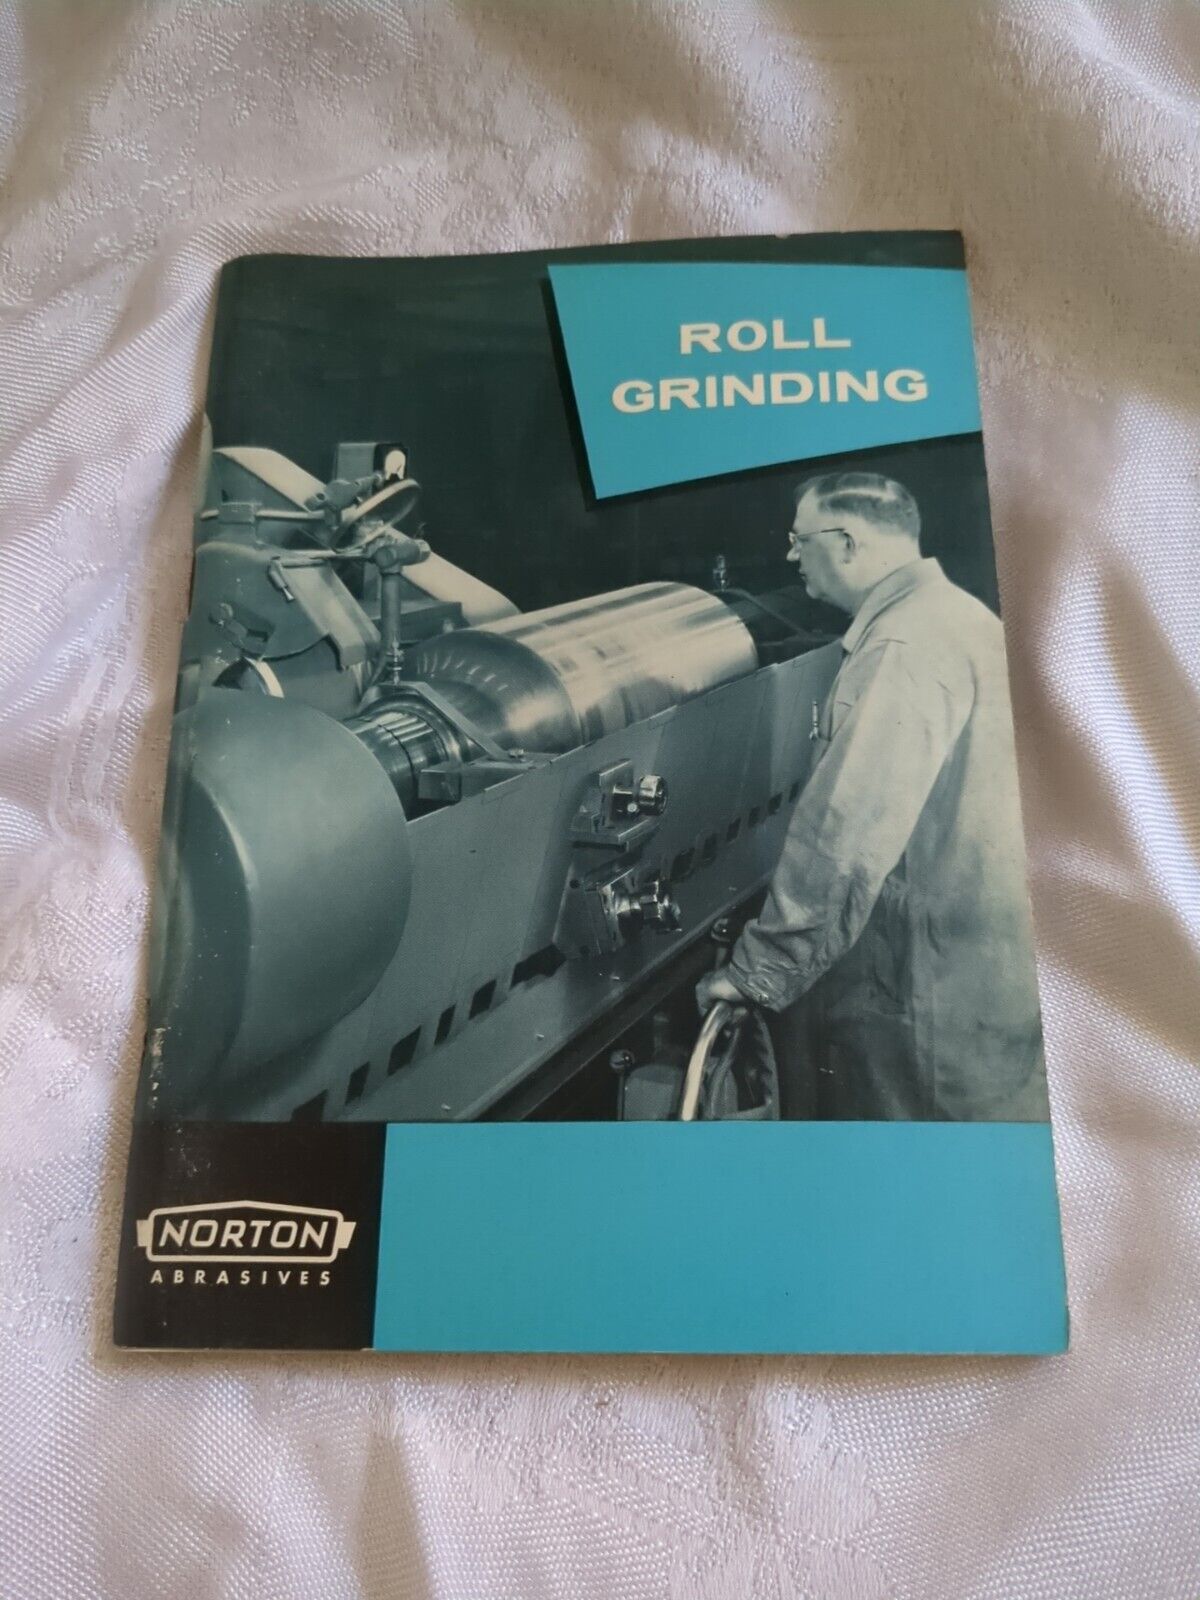 1960 Norton Abrasives Roll Grinding Booklet Vintage